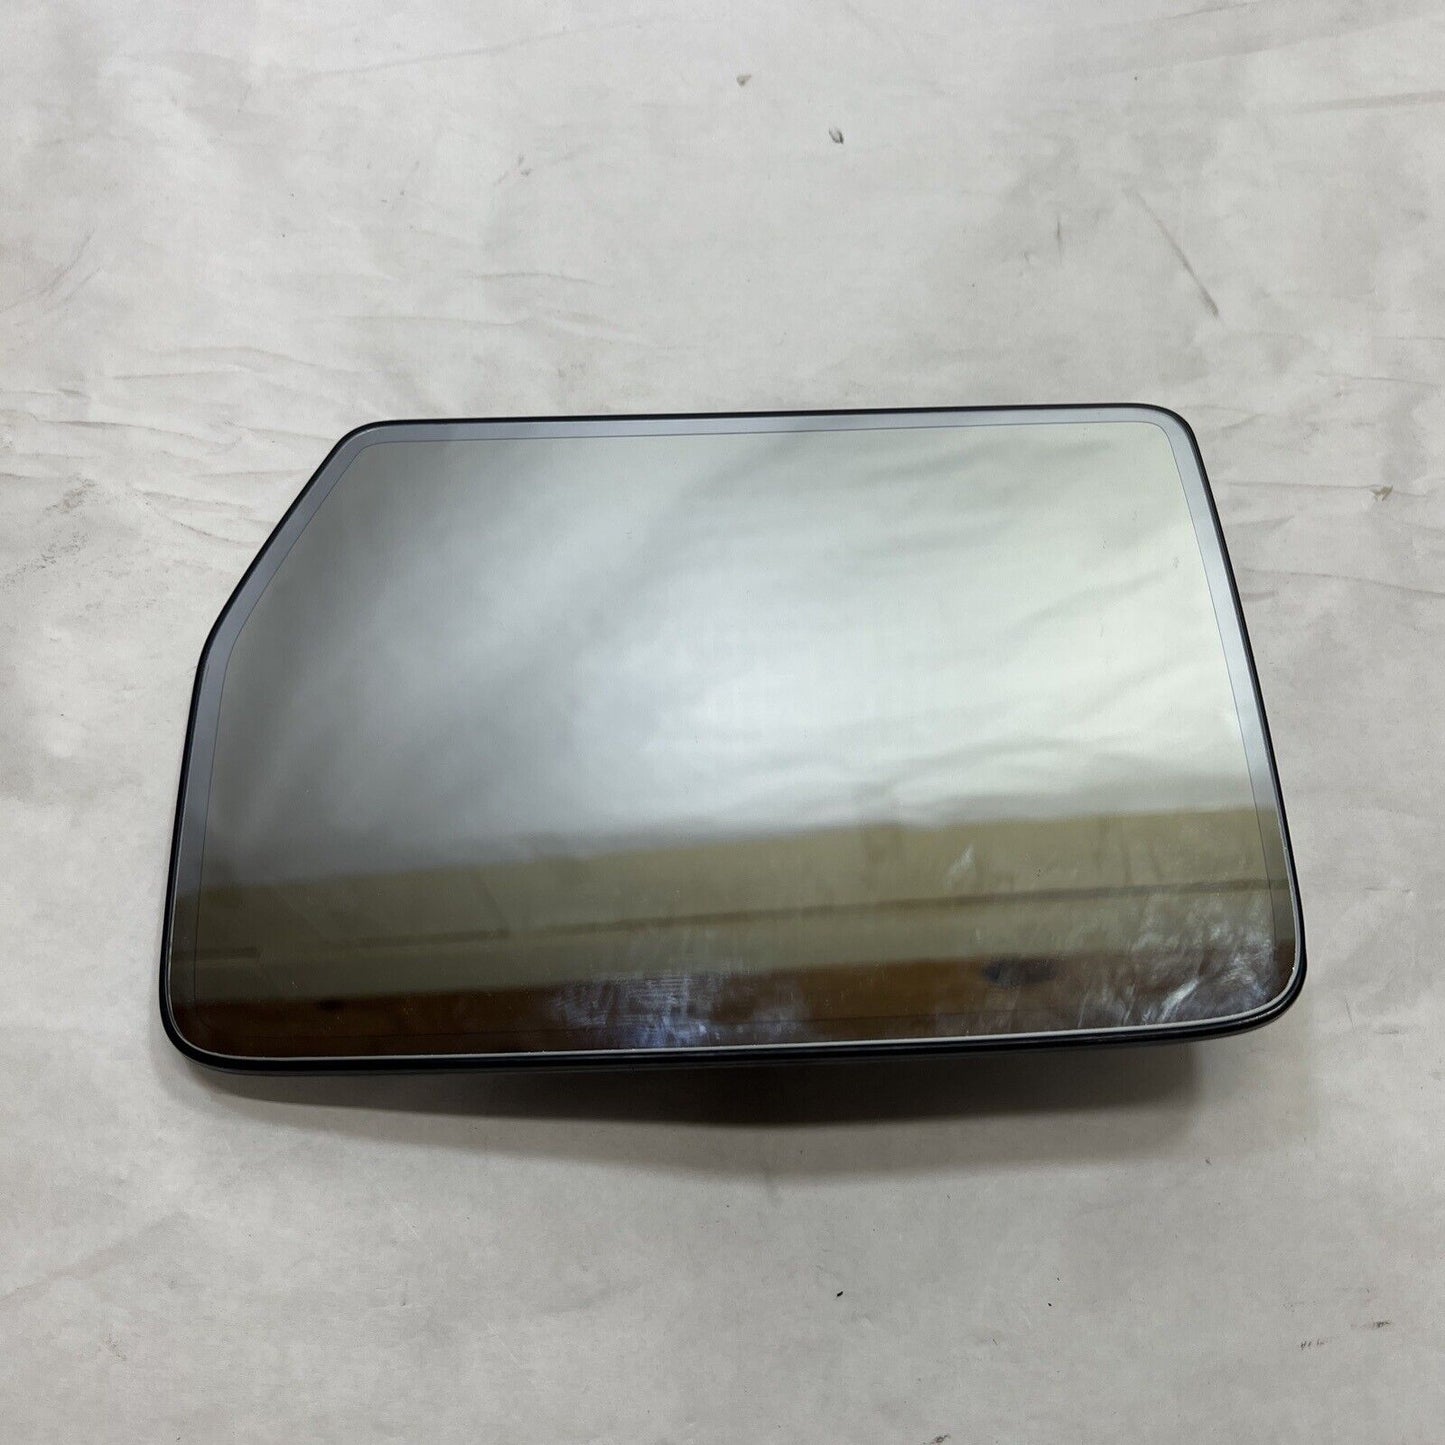 New OEM Ford Mirror Glass Driver Side w/ Heat Memory Blindspot 7L3Z-17K707-L